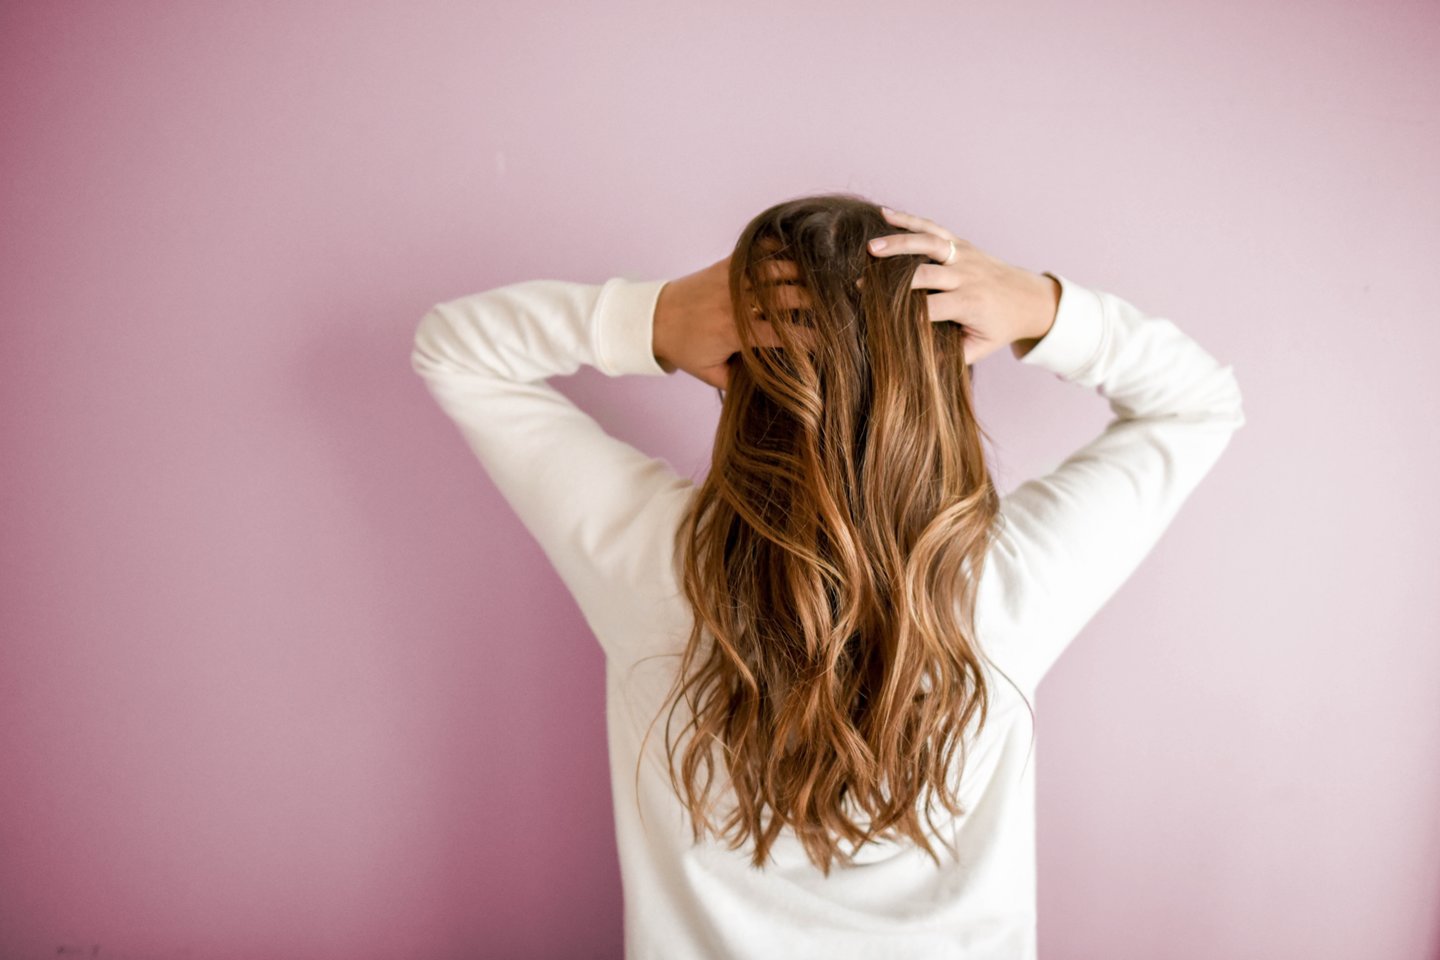 Jeigu jūsų organizmui trūksta medžiagų, nuo kurių priklauso plaukų būklė, kokybiški, plaukams skirti maisto papildai, yra būtent tai, kas gali jums padėti.<br>„Pexels.com“ nuotr.